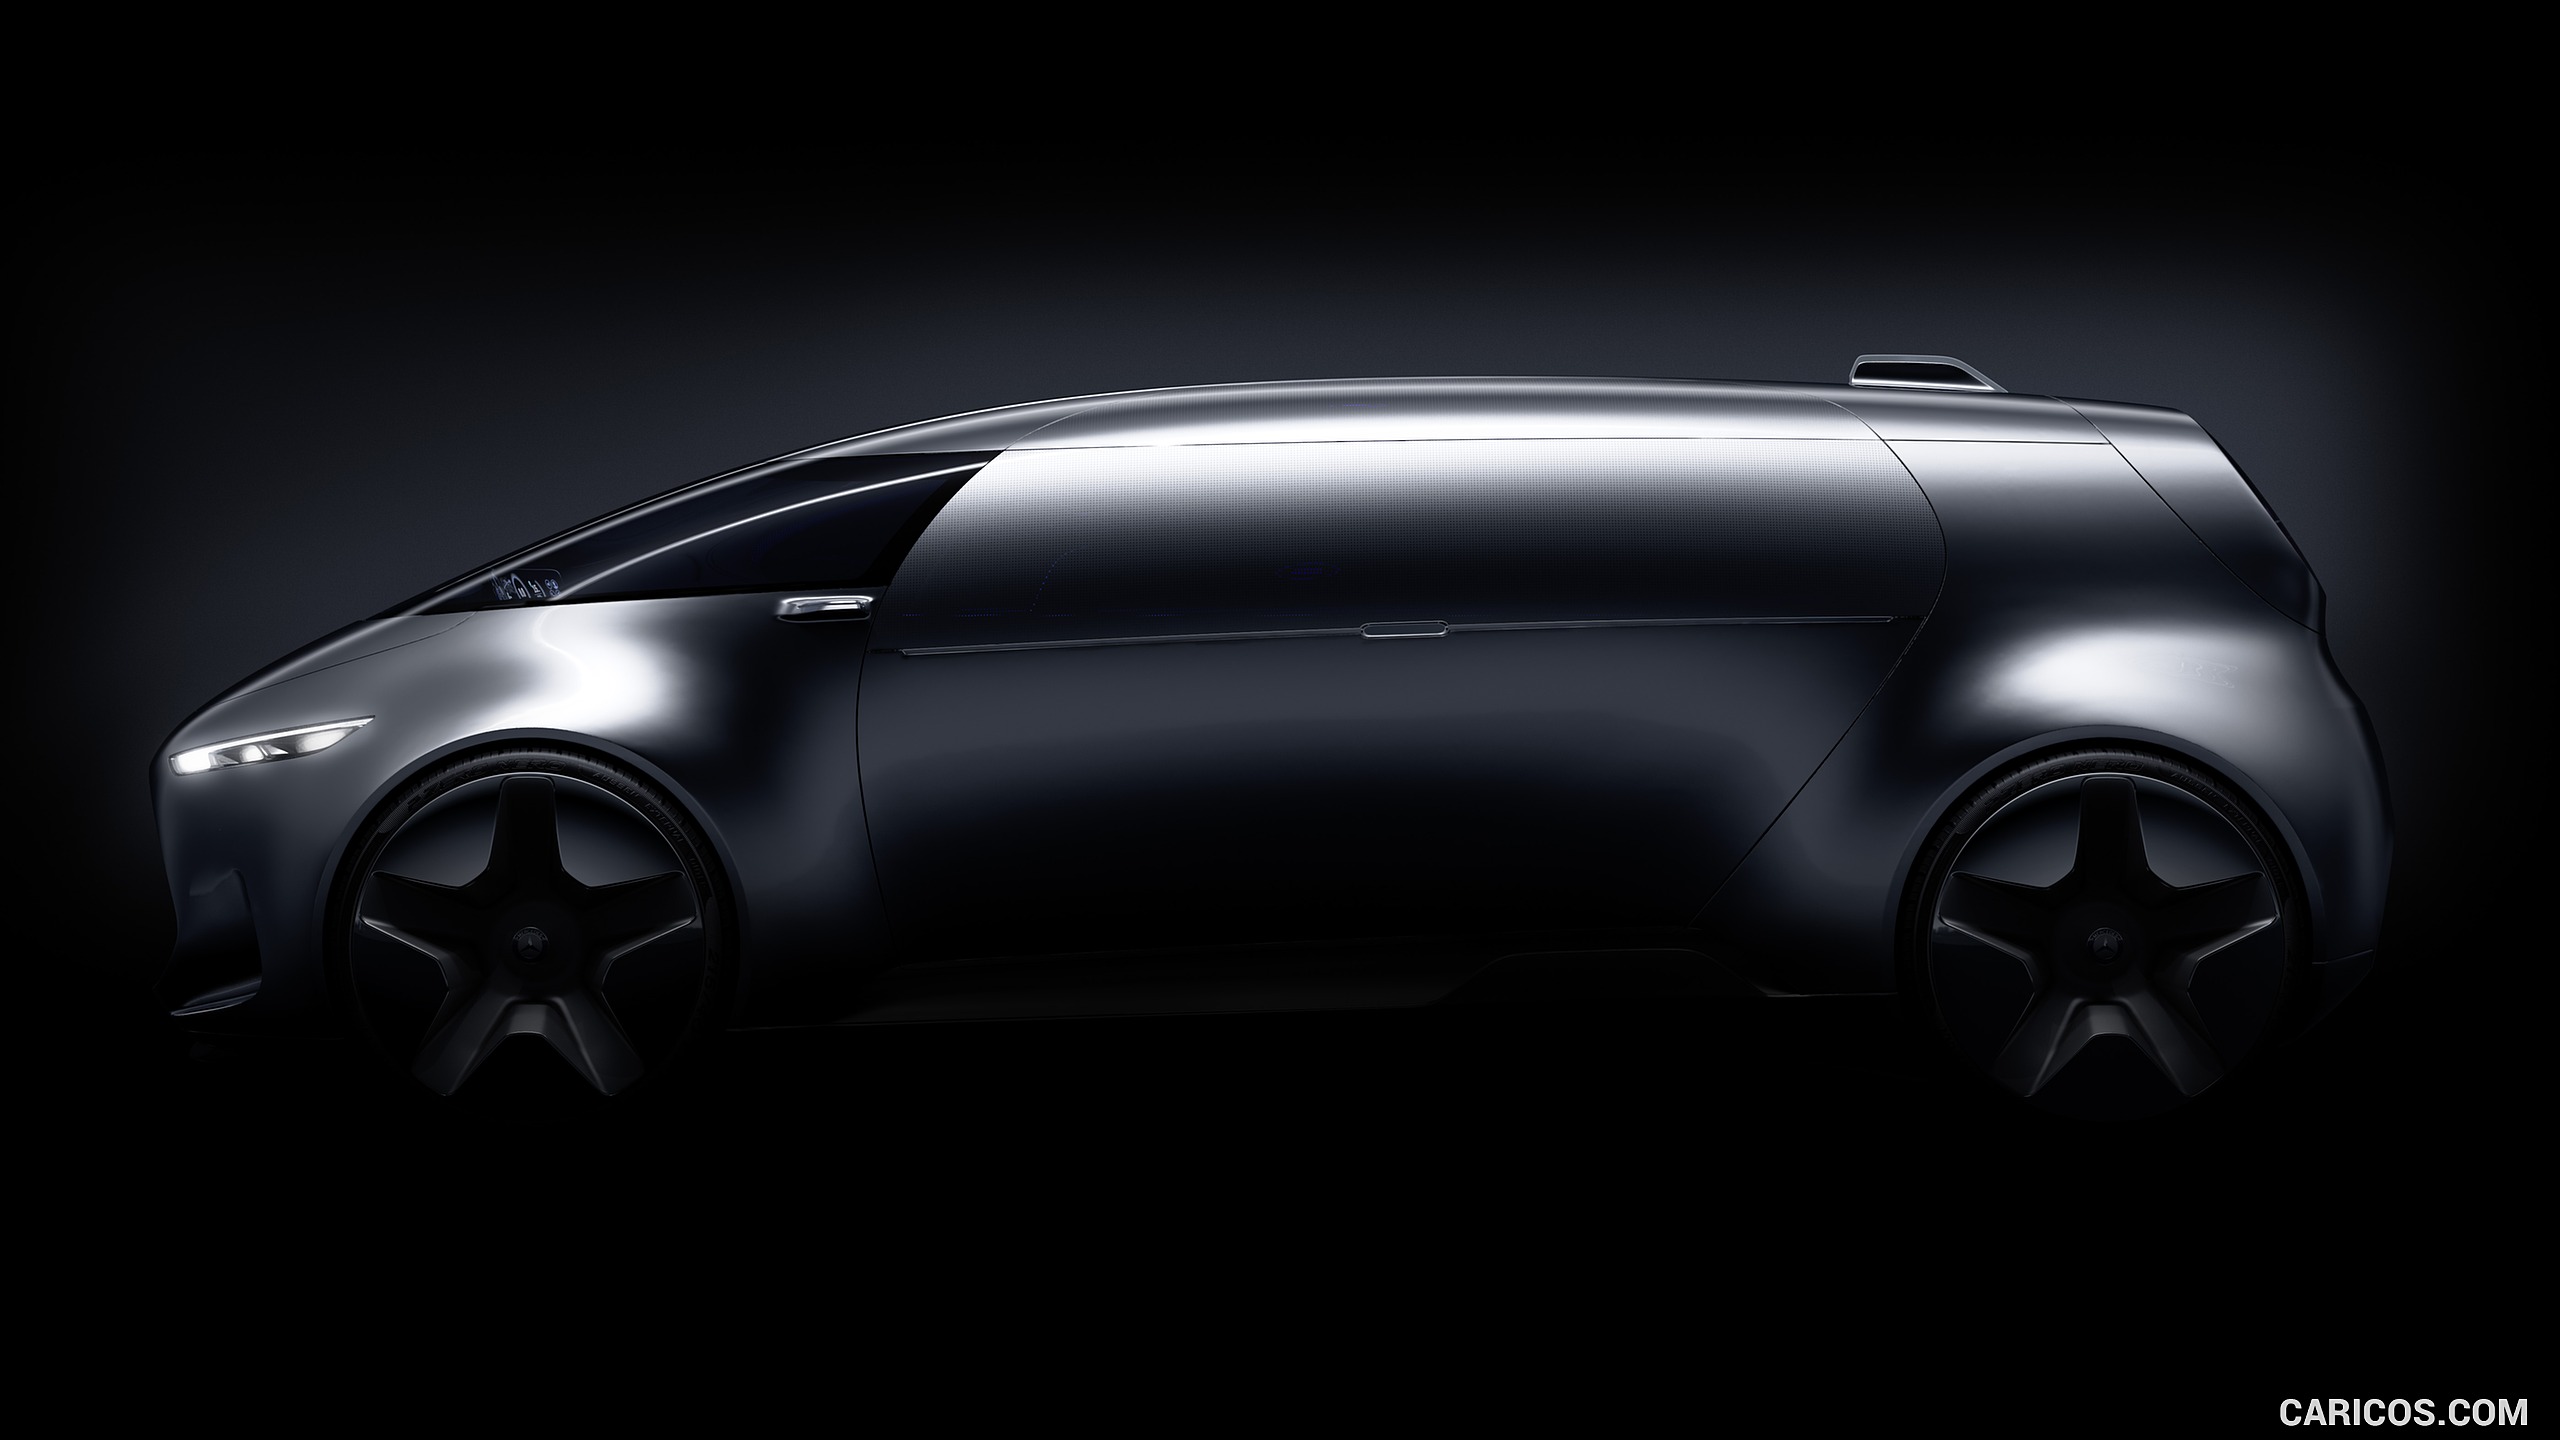 2015 Mercedes-Benz Vision Tokyo Concept - Side, #12 of 22